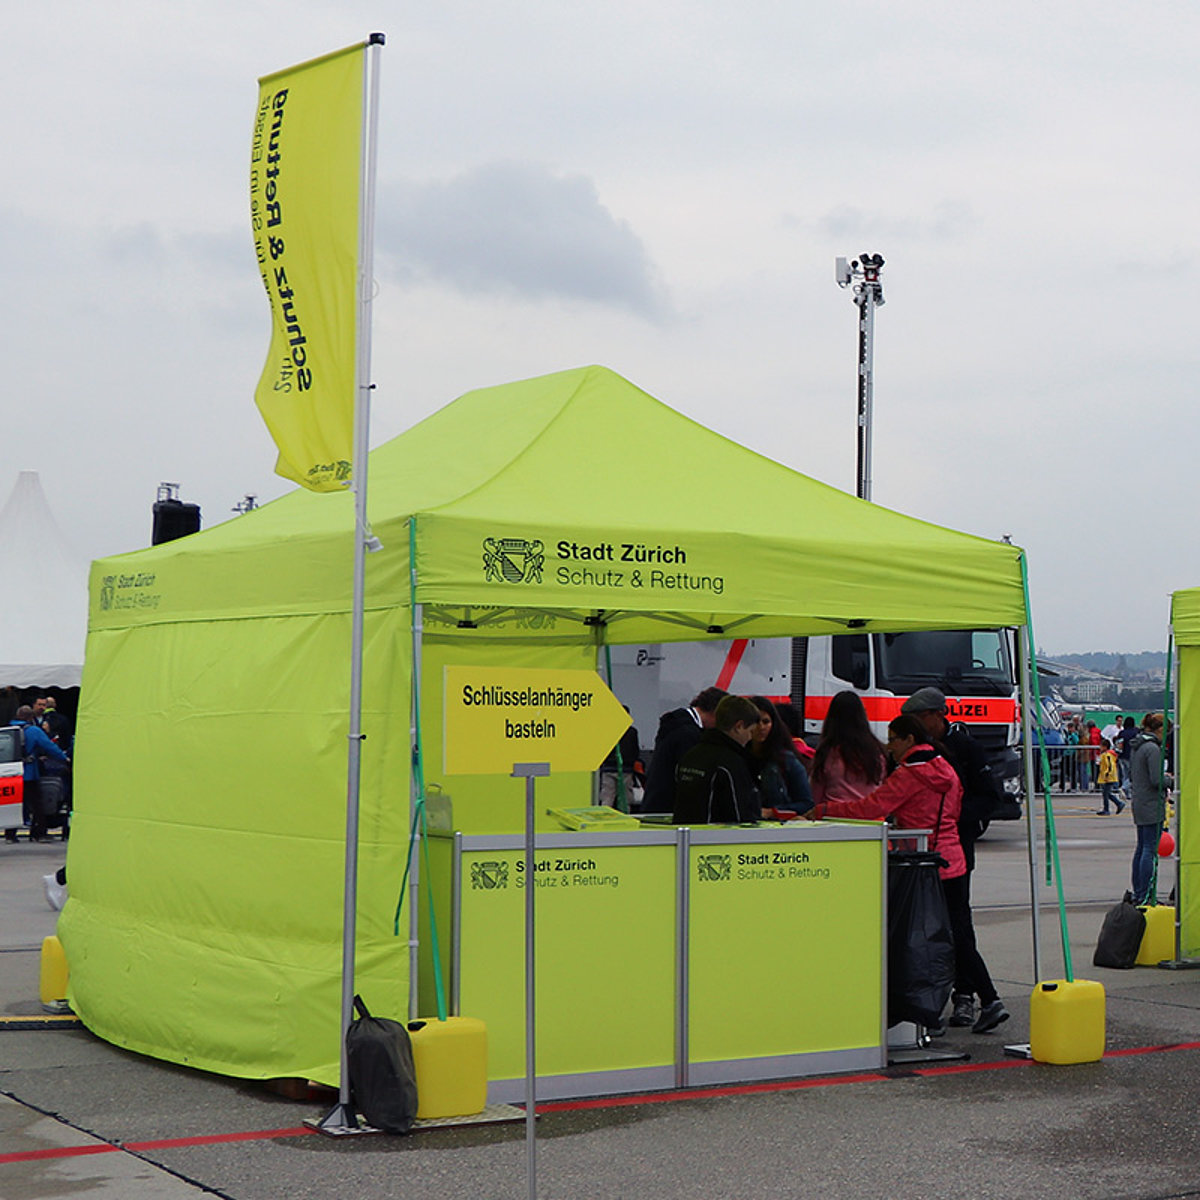 Deux tentes événementielles de la ville de Zurich utilisées comme stands d’information lors d’un événement.